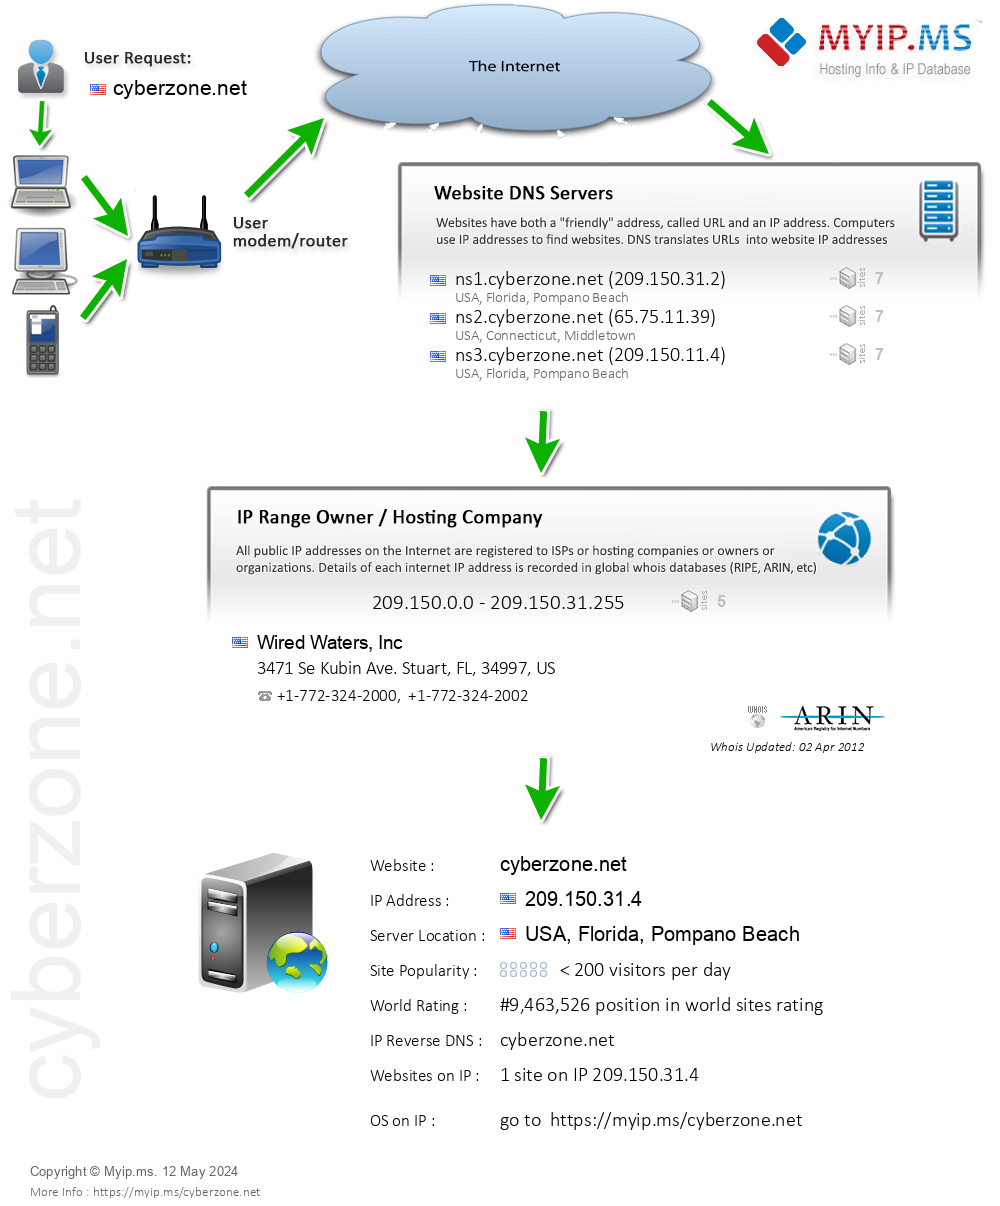 Cyberzone.net - Website Hosting Visual IP Diagram